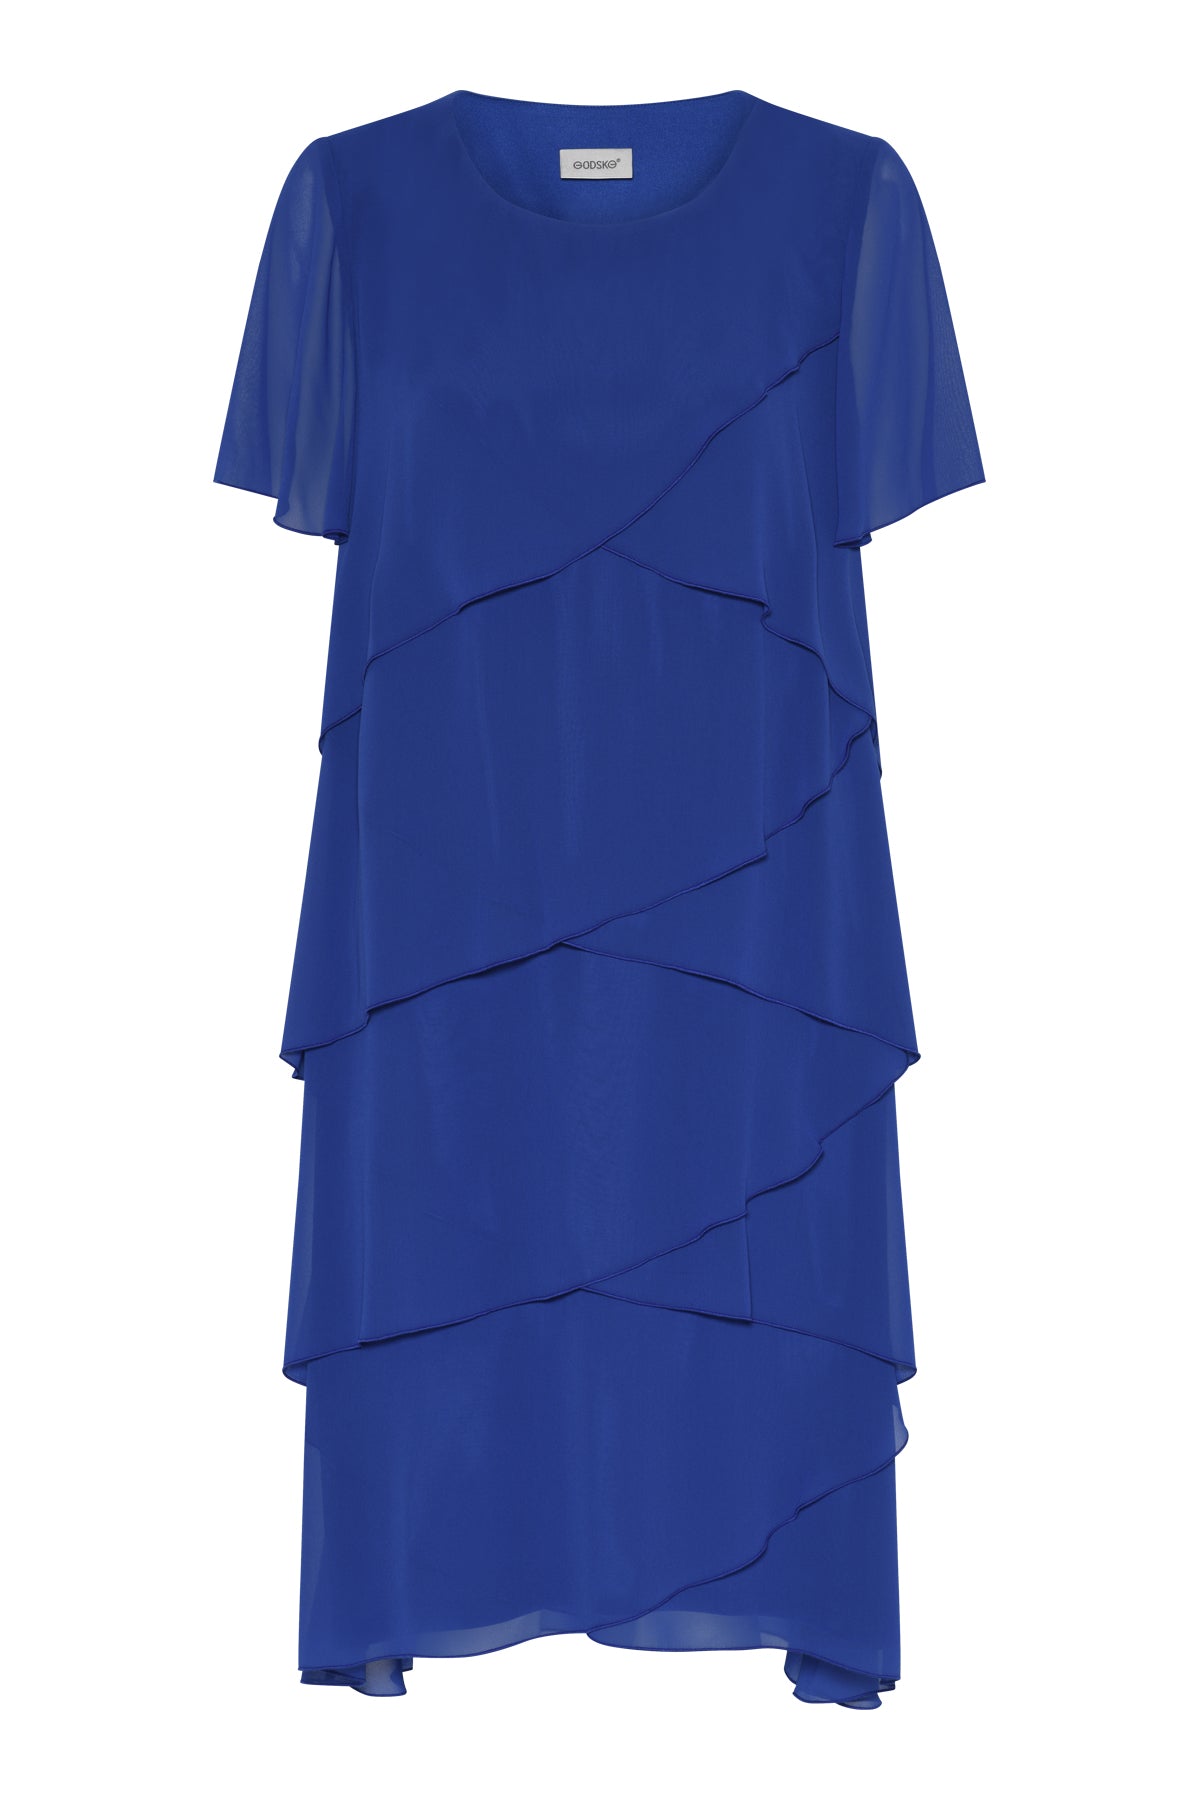 Godske Dress Tiered Layers in Blue